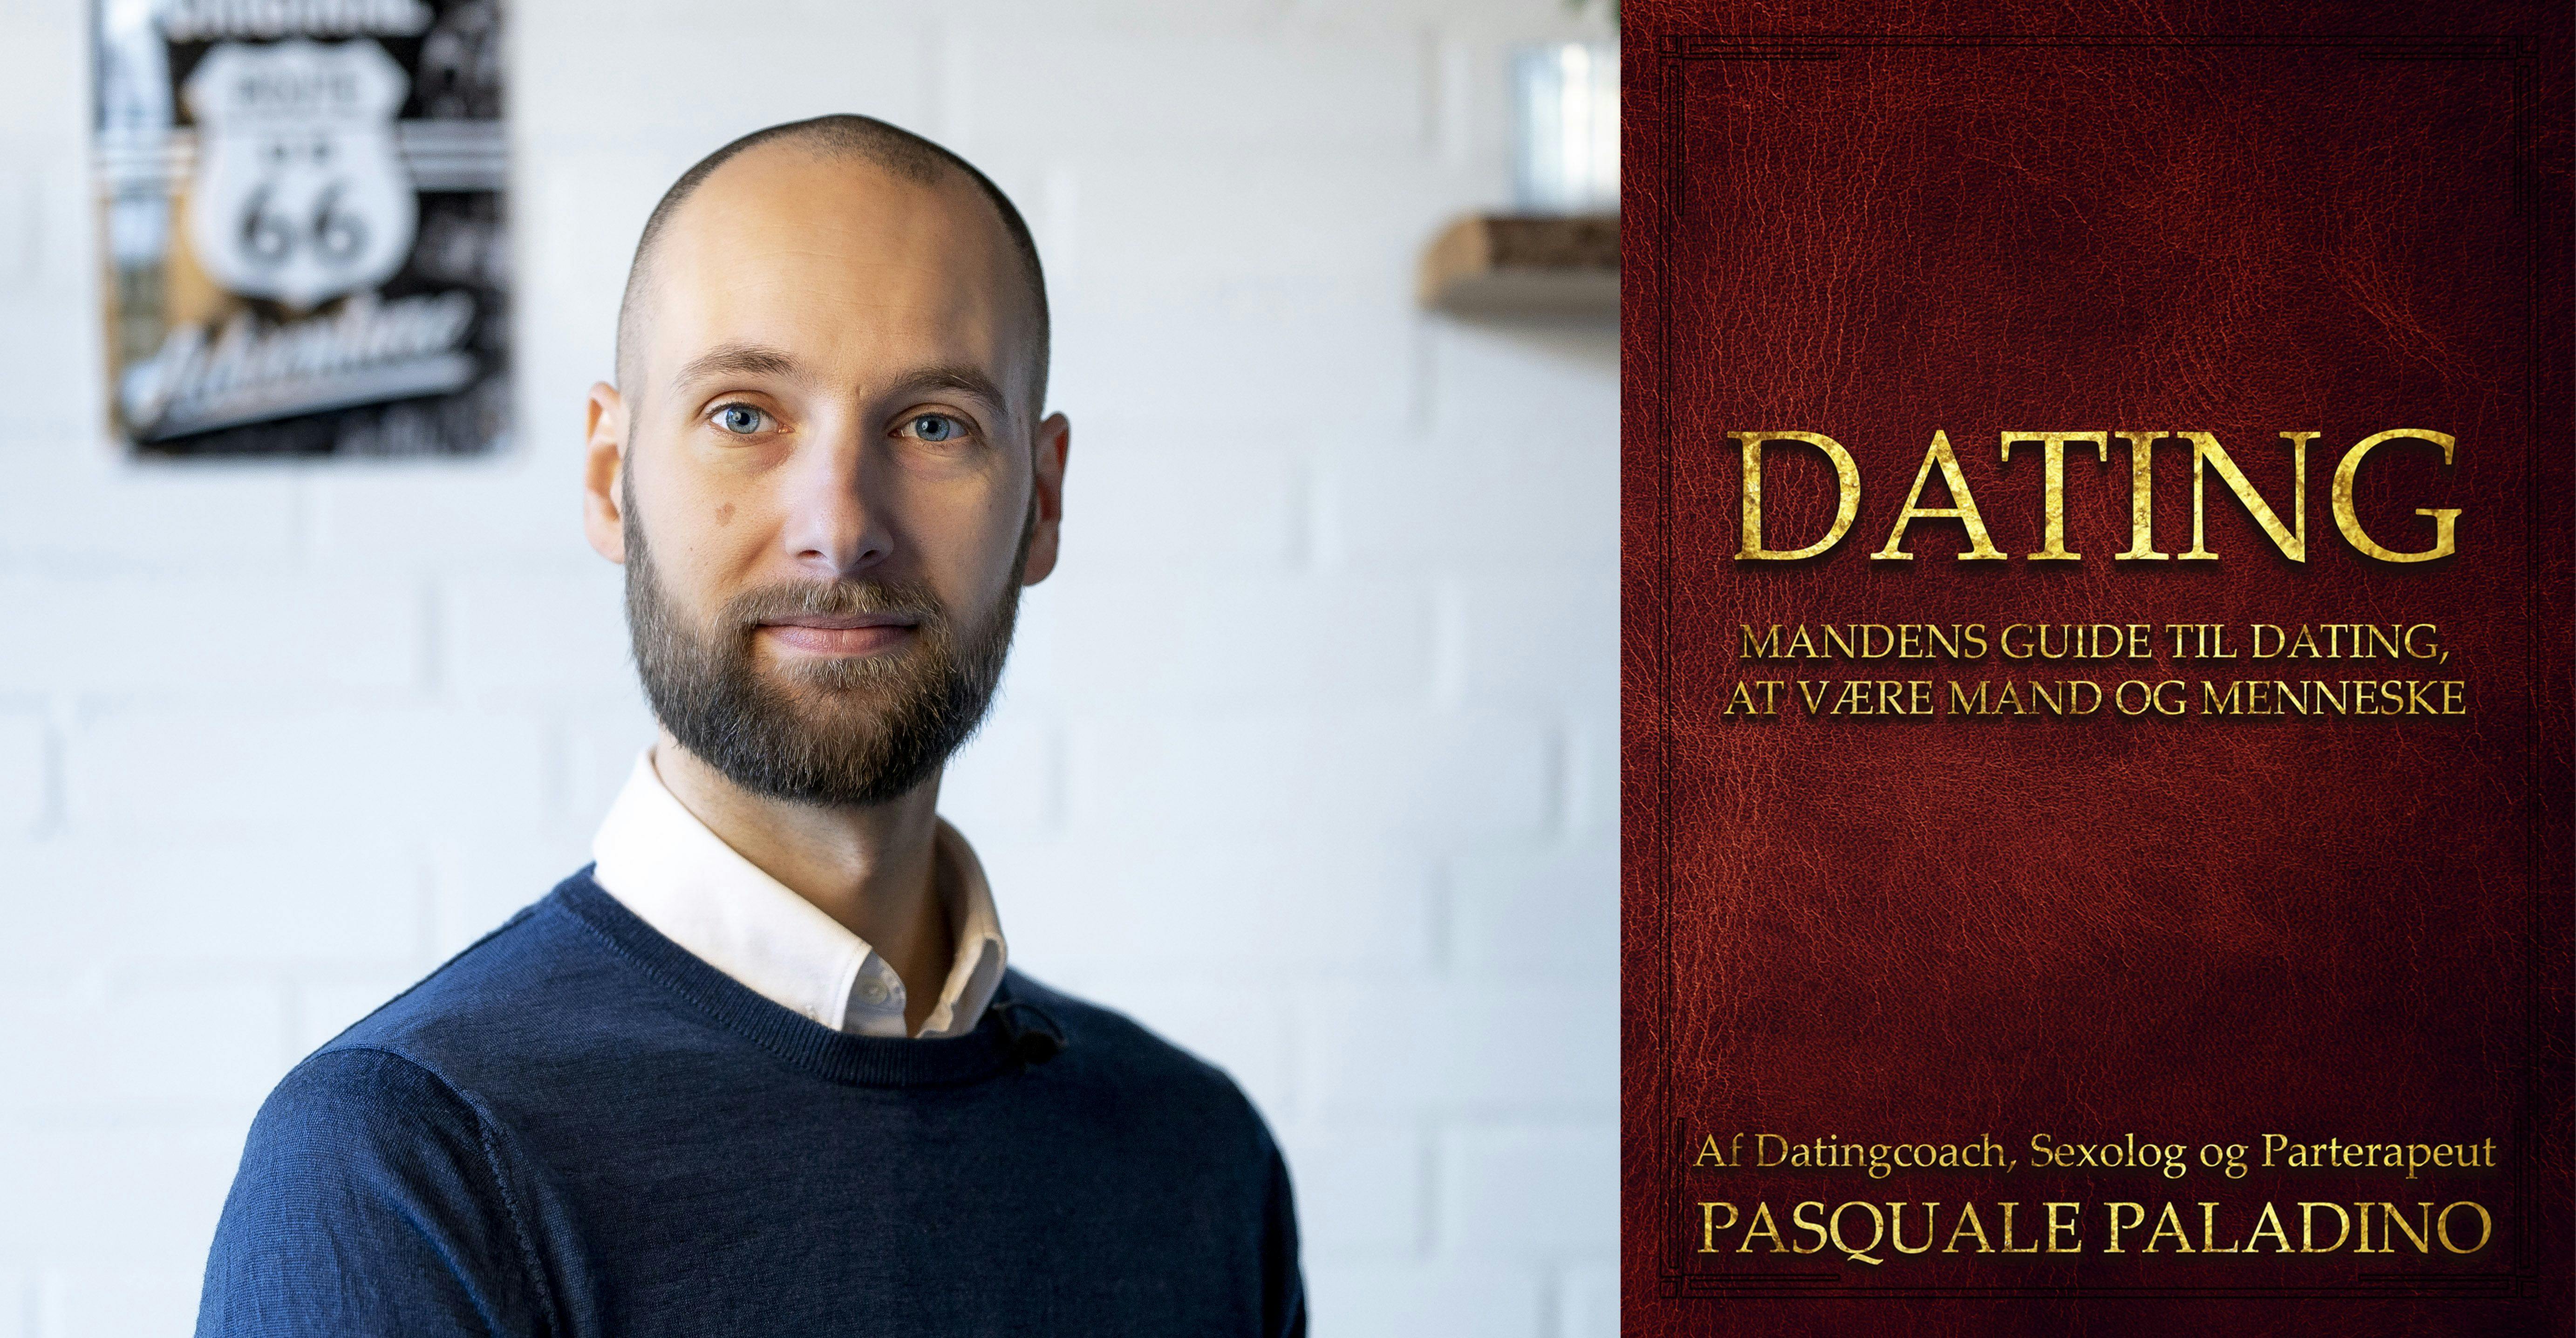 Pasquale Paladino vil hjælpe mænd med dating ved at gøre dem til 'rigtige' mænd.